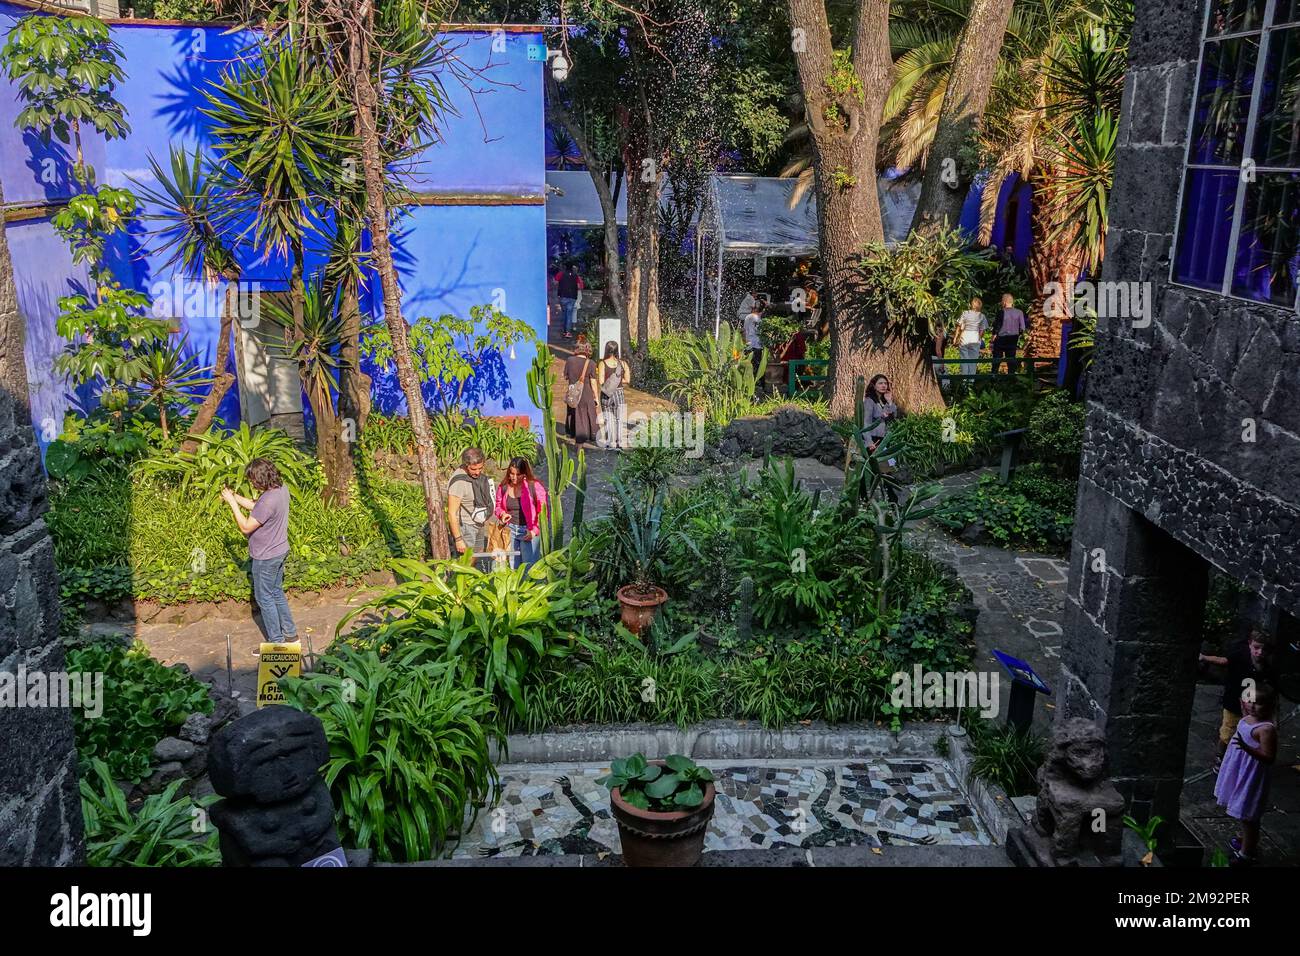 Touristen schlendern durch den Garten im Frida Kahlo Museum, auch bekannt als Blaues Haus, das dem Leben und Werk des mexikanischen Künstlers Frida Kahlo gewidmet ist, im Viertel Colonia del Carmen in Coyoacan, Mexiko-Stadt, Mexiko. Stockfoto